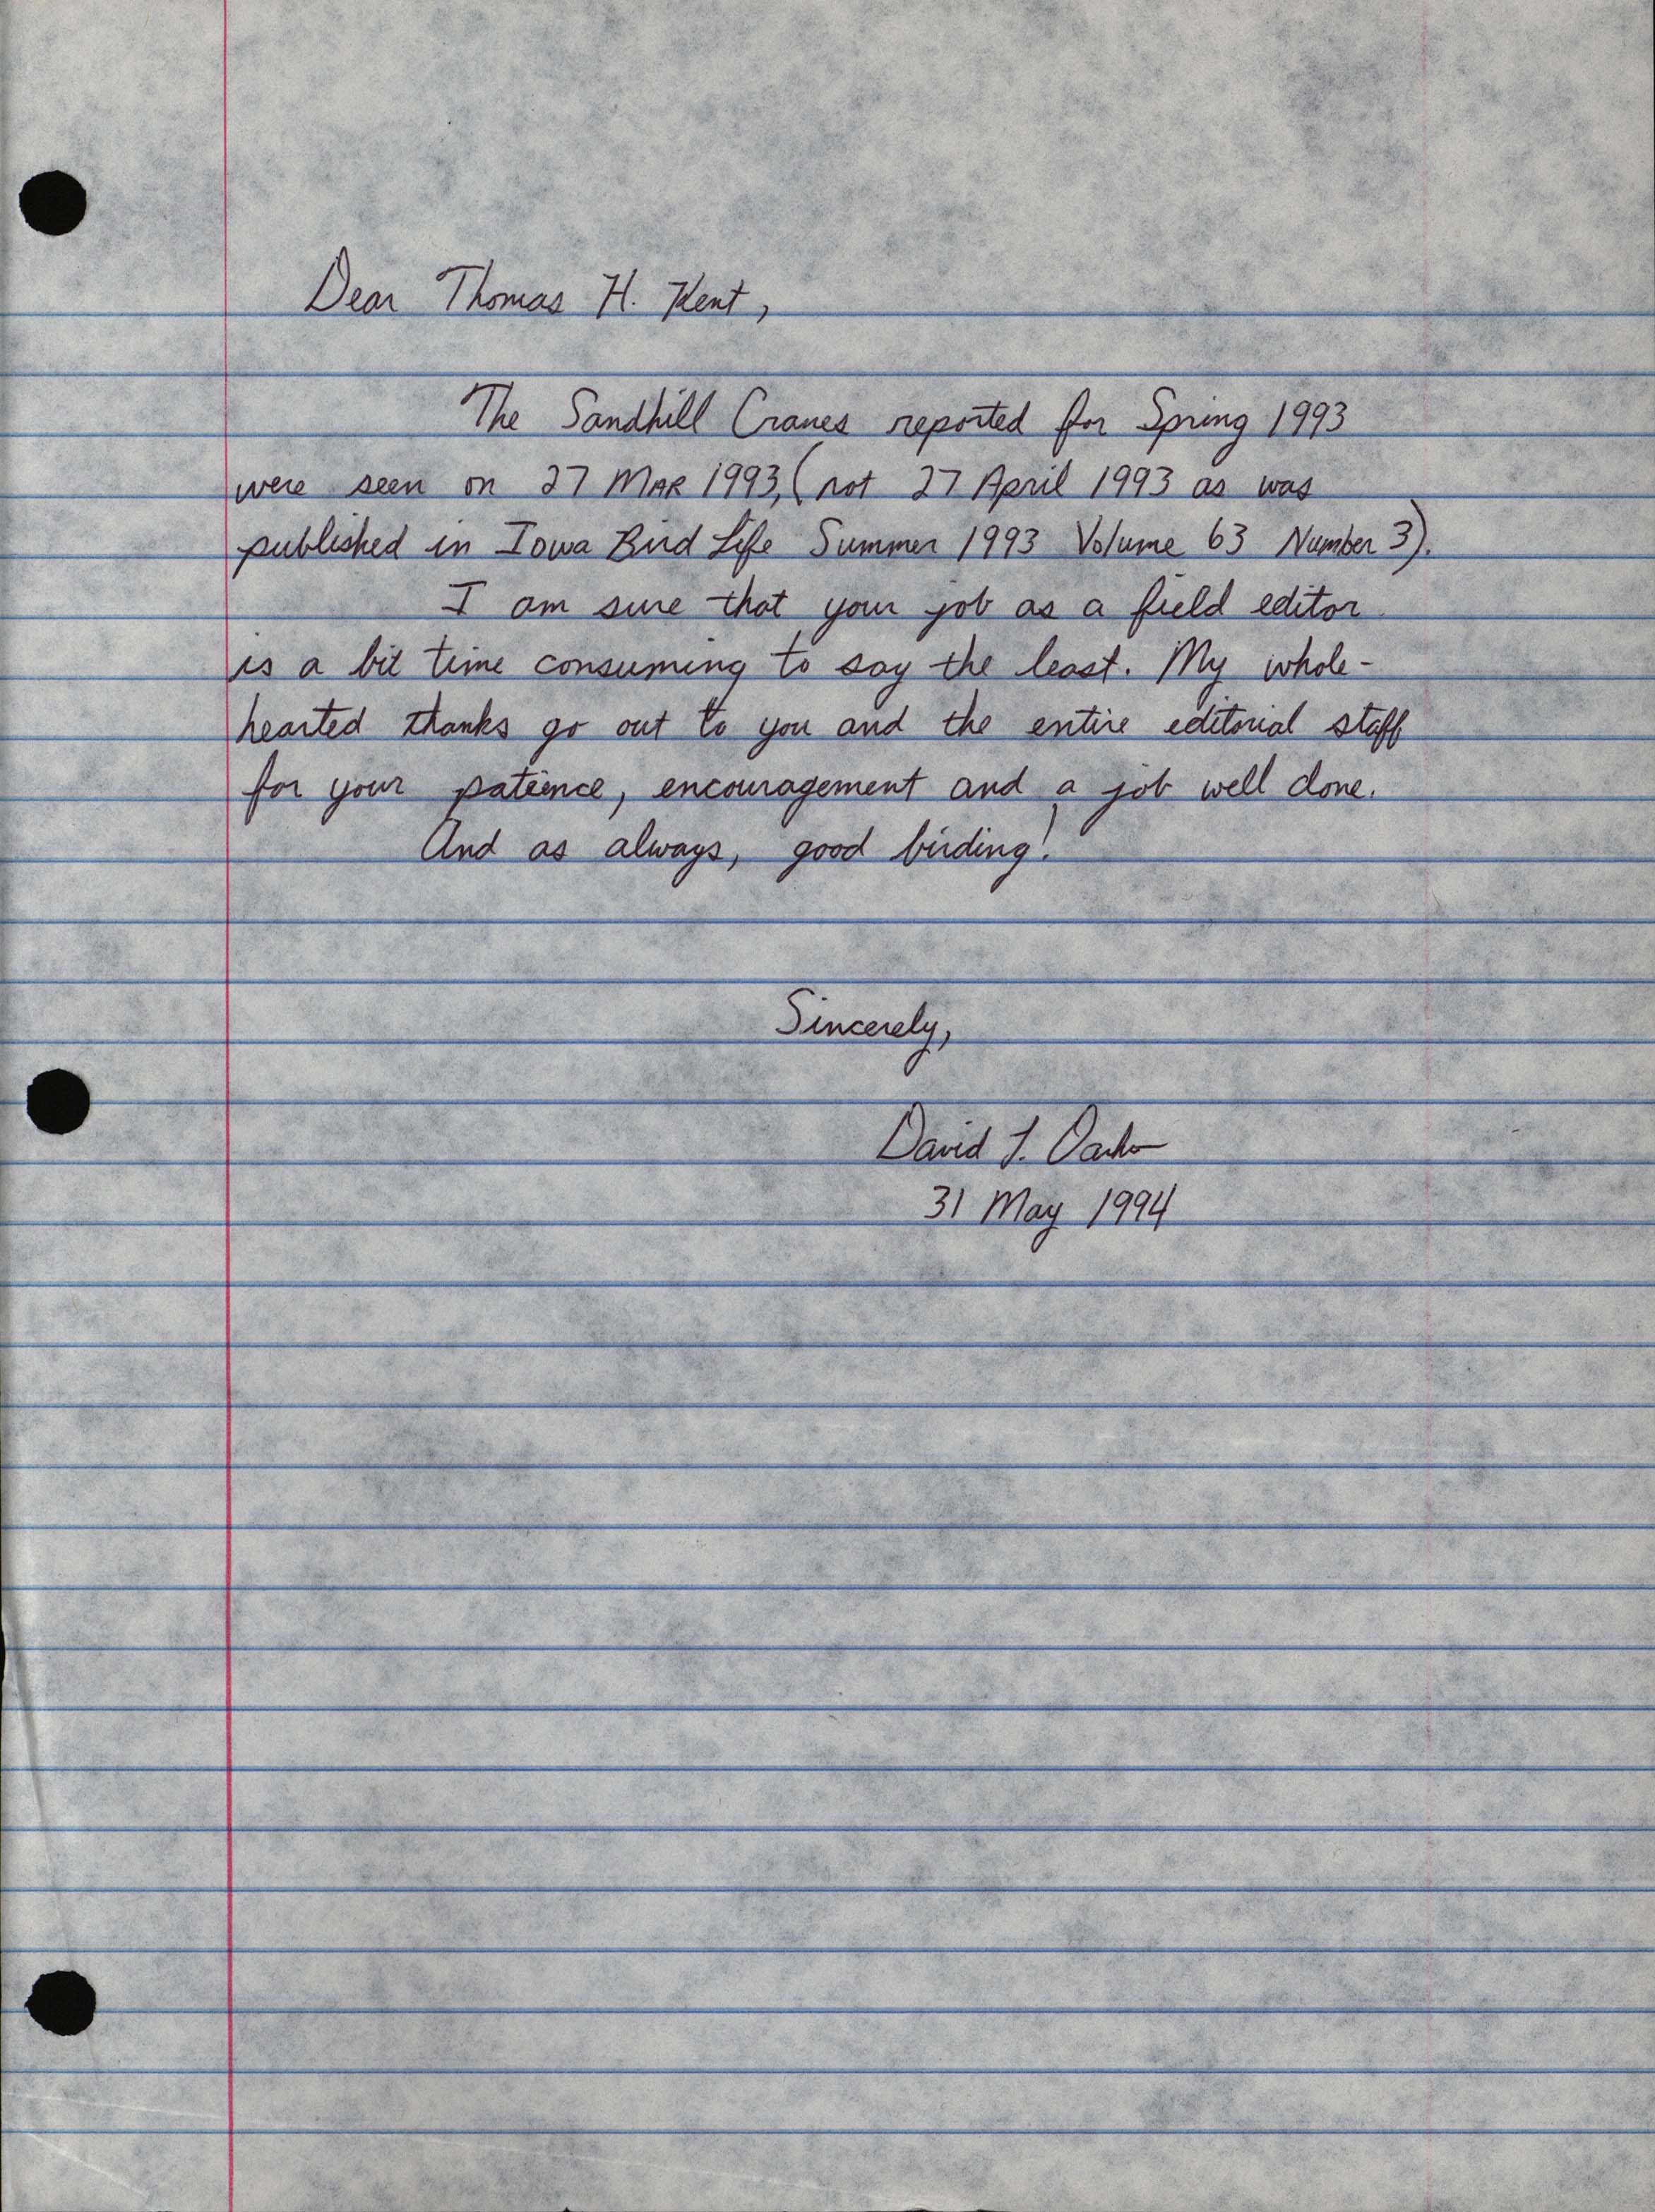 David Dankert letter to Thomas Kent regarding Sandhill Crane sighting, May 31, 1994